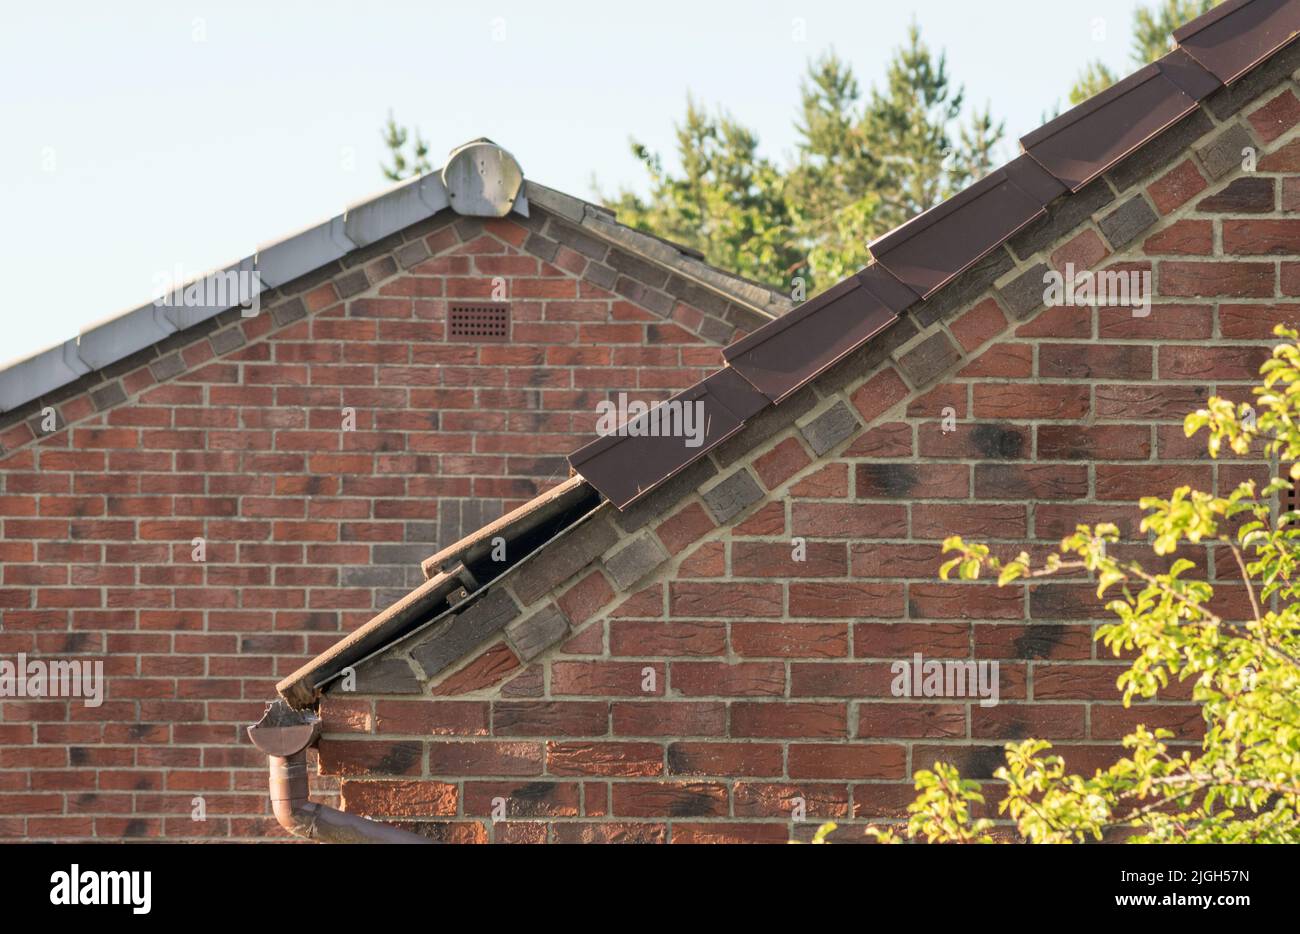 Verga asciutta di plastica o bordatura del tetto su tetti di una casa, Inghilterra, Regno Unito Foto Stock